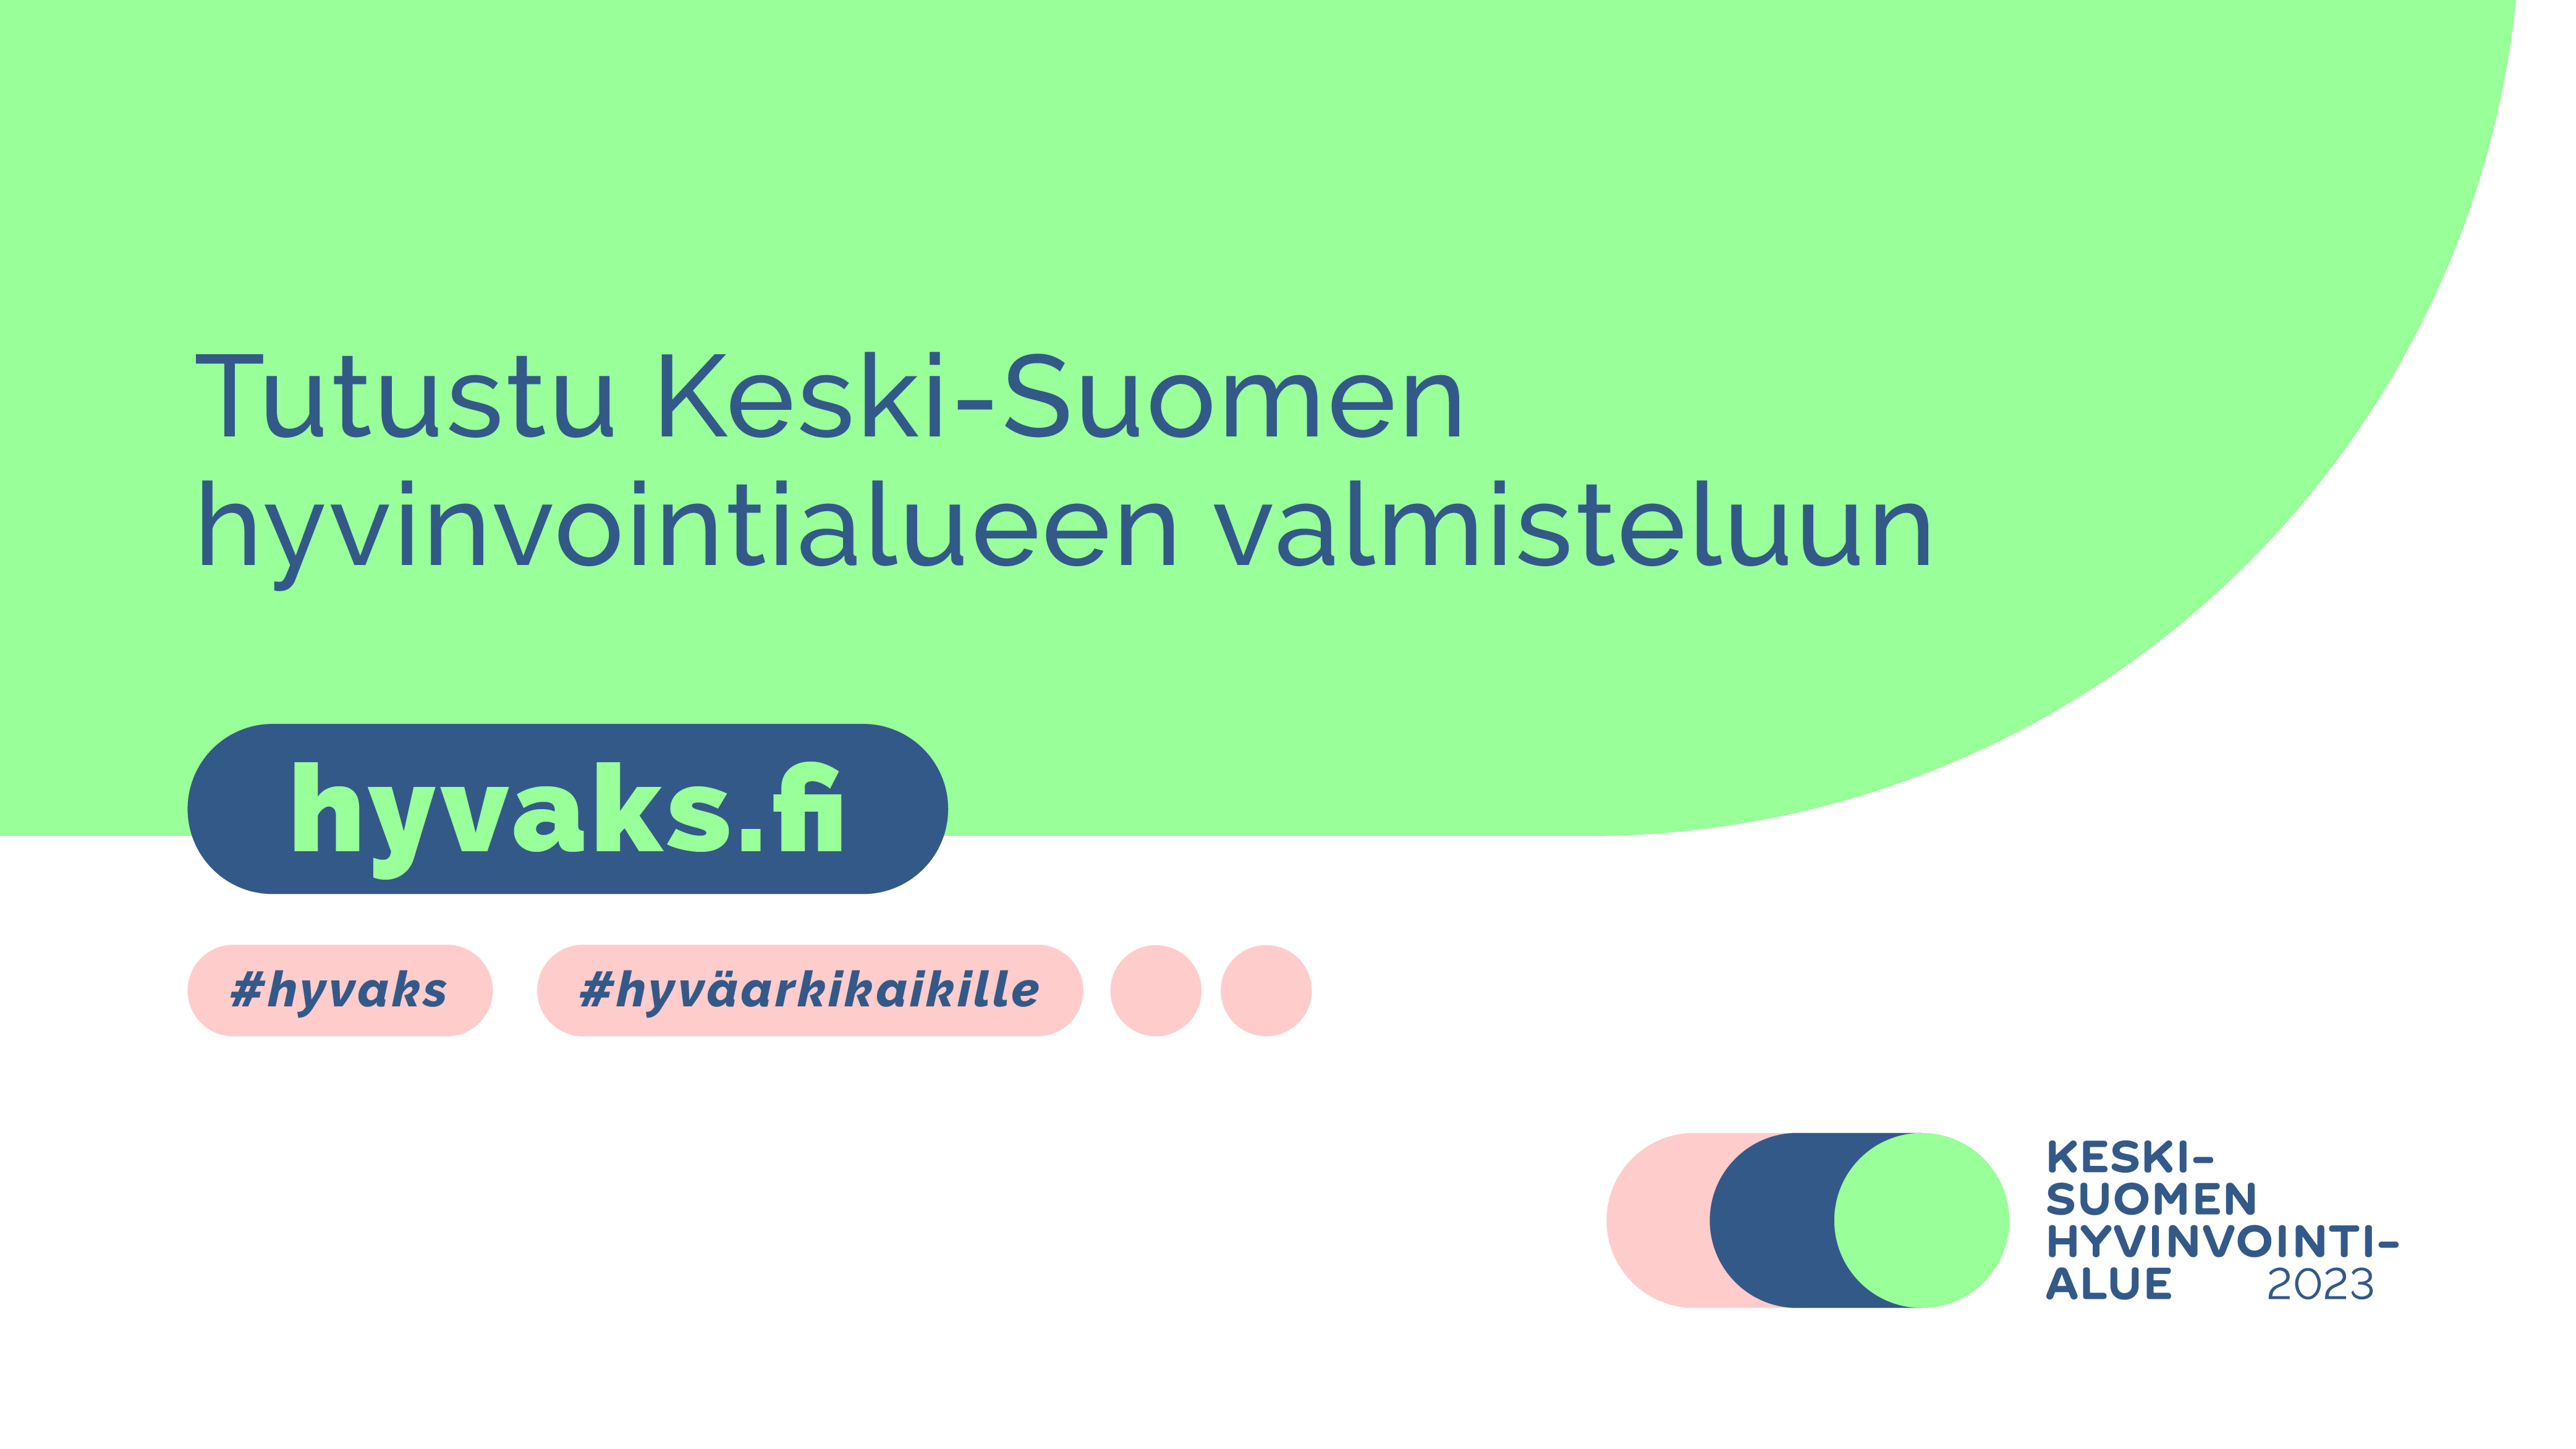 Keski-Suomen hyvinvointialue 2023 -valmistelun banneri